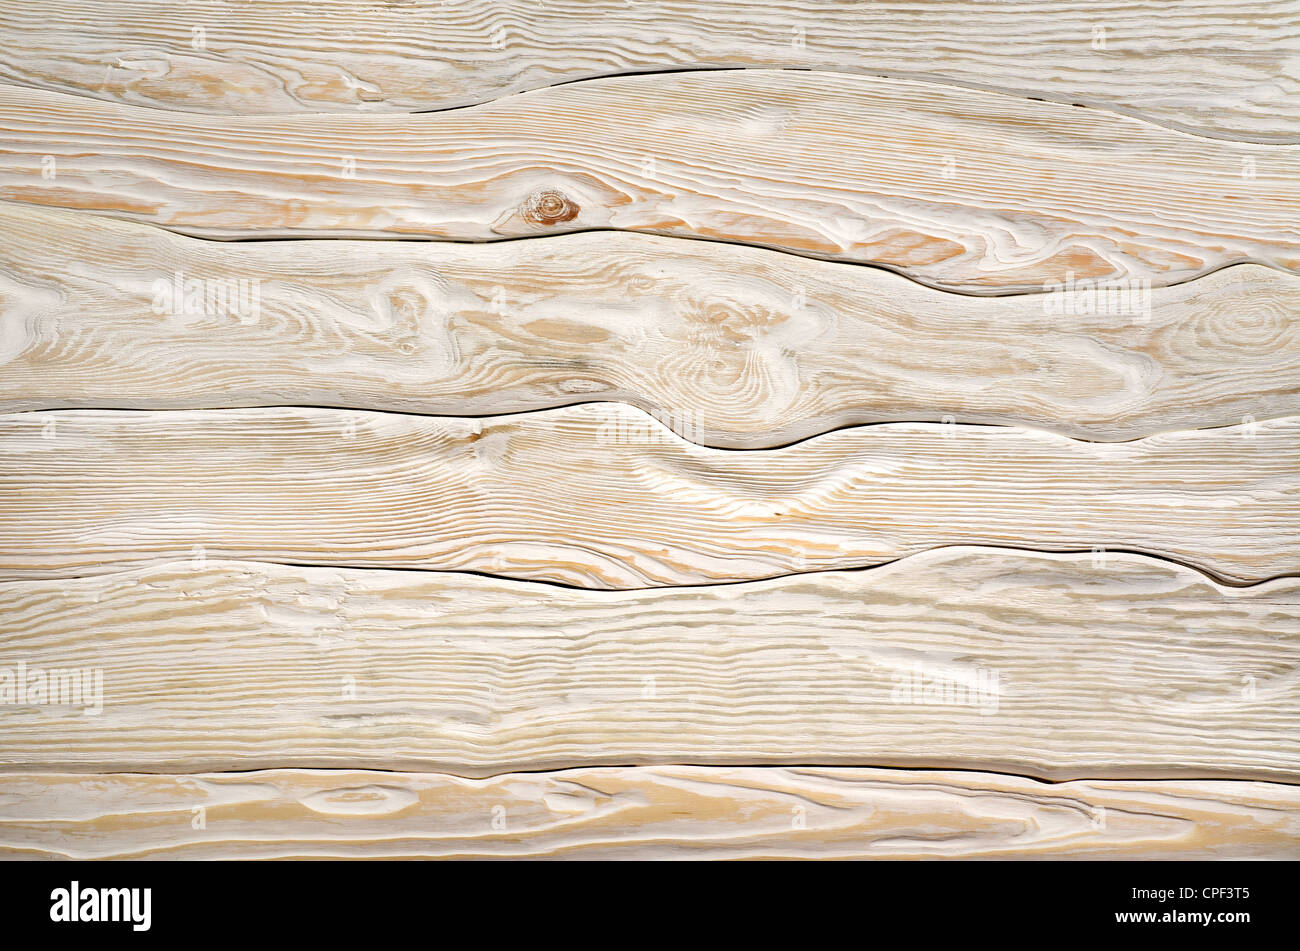 Vieille planche en bois d'une couleur blanc peint Banque D'Images